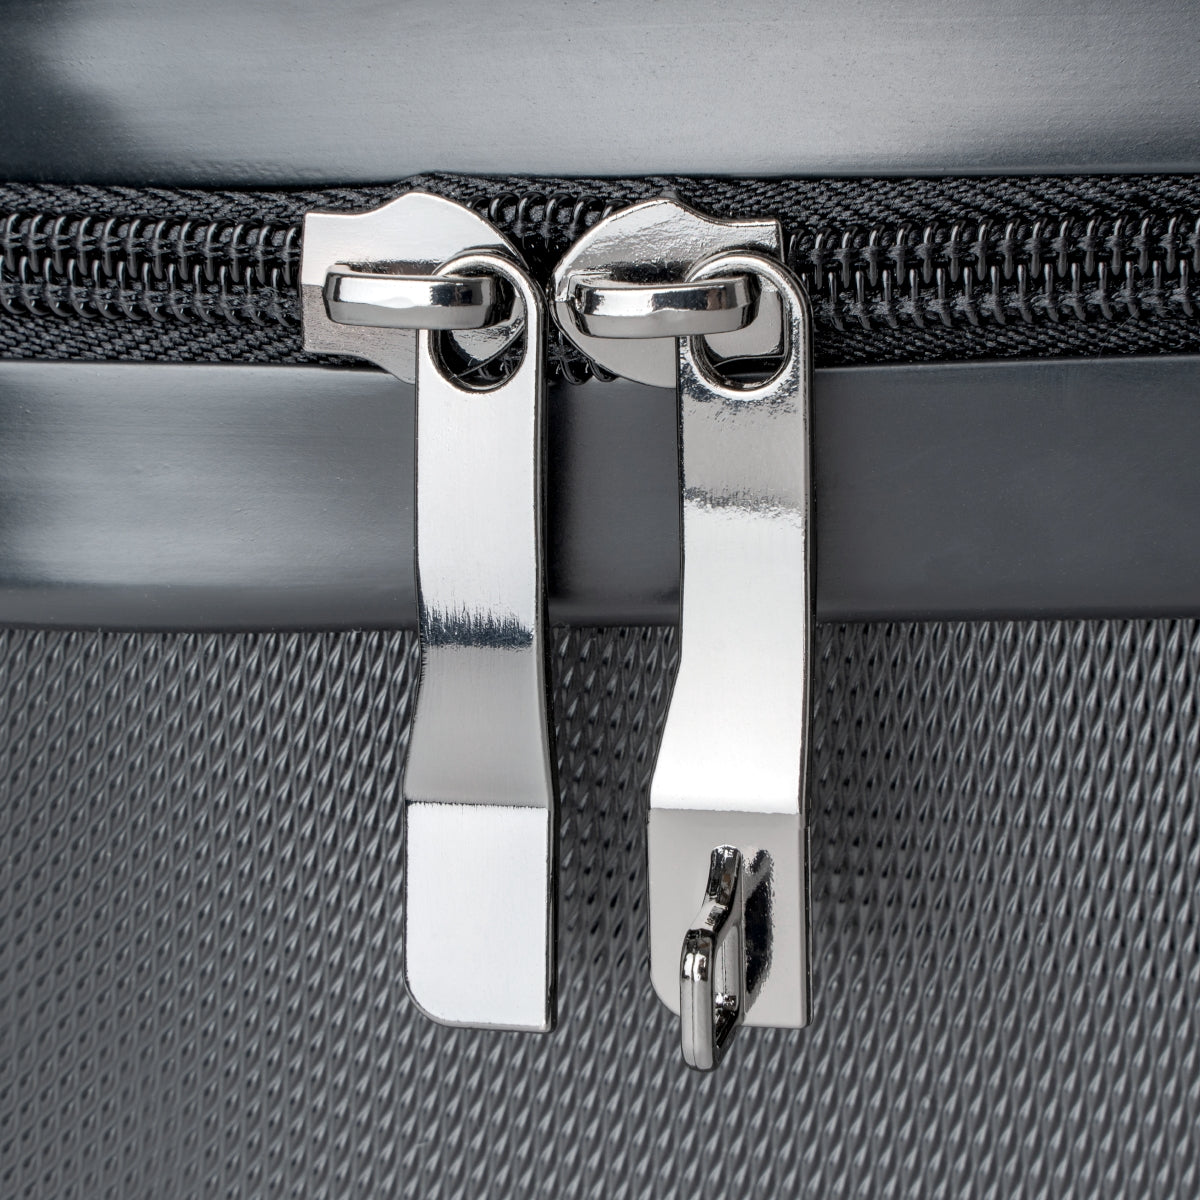 Yngwie Malmsteen Suitcase